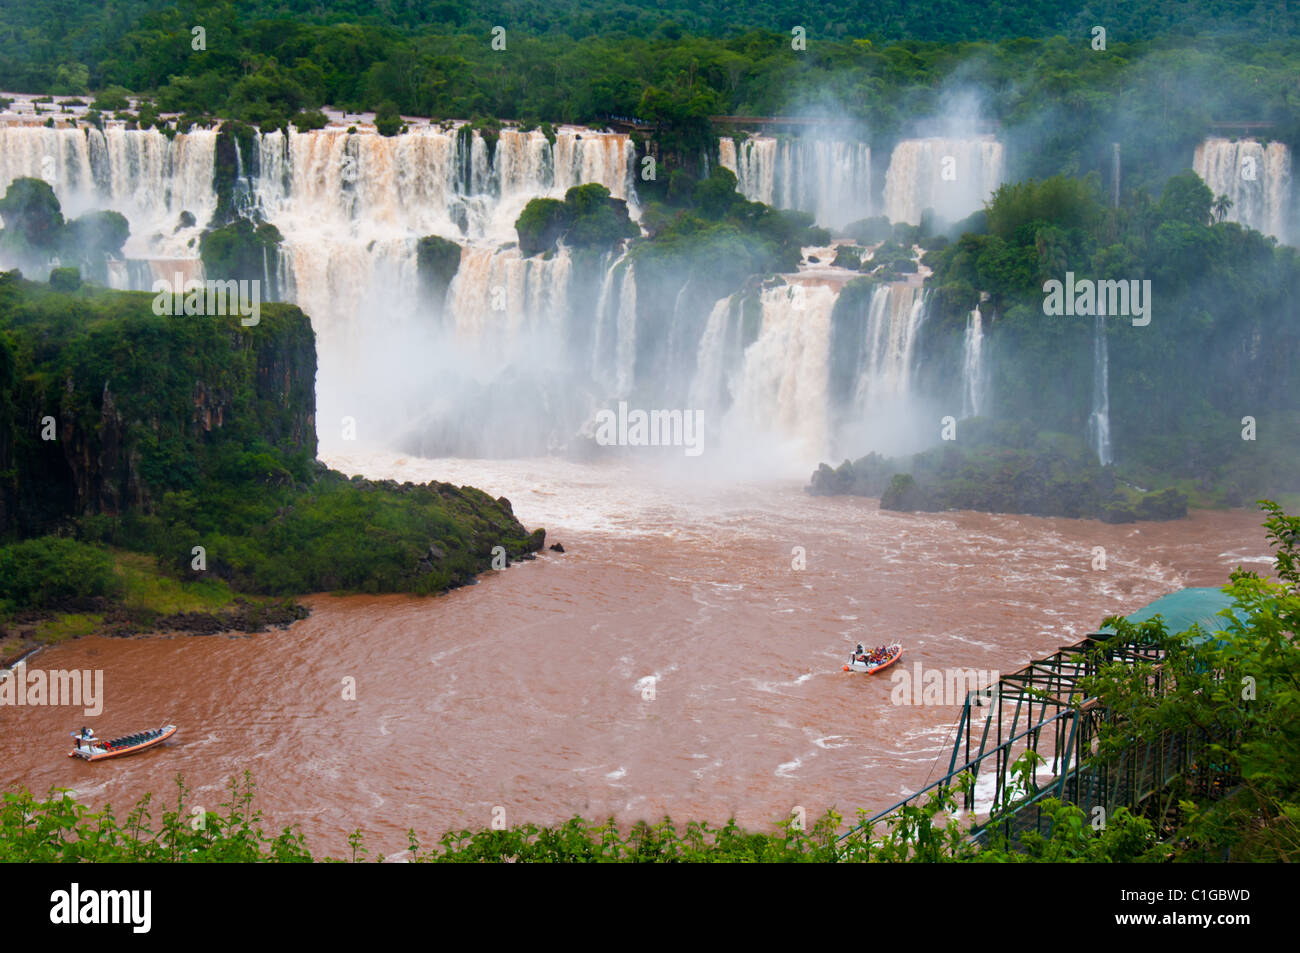 Les touristes voir chutes d'Iguaçu, l'une des plus célèbres merveilles naturelles, situé à la frontière du Brésil et l'Argentine. Banque D'Images